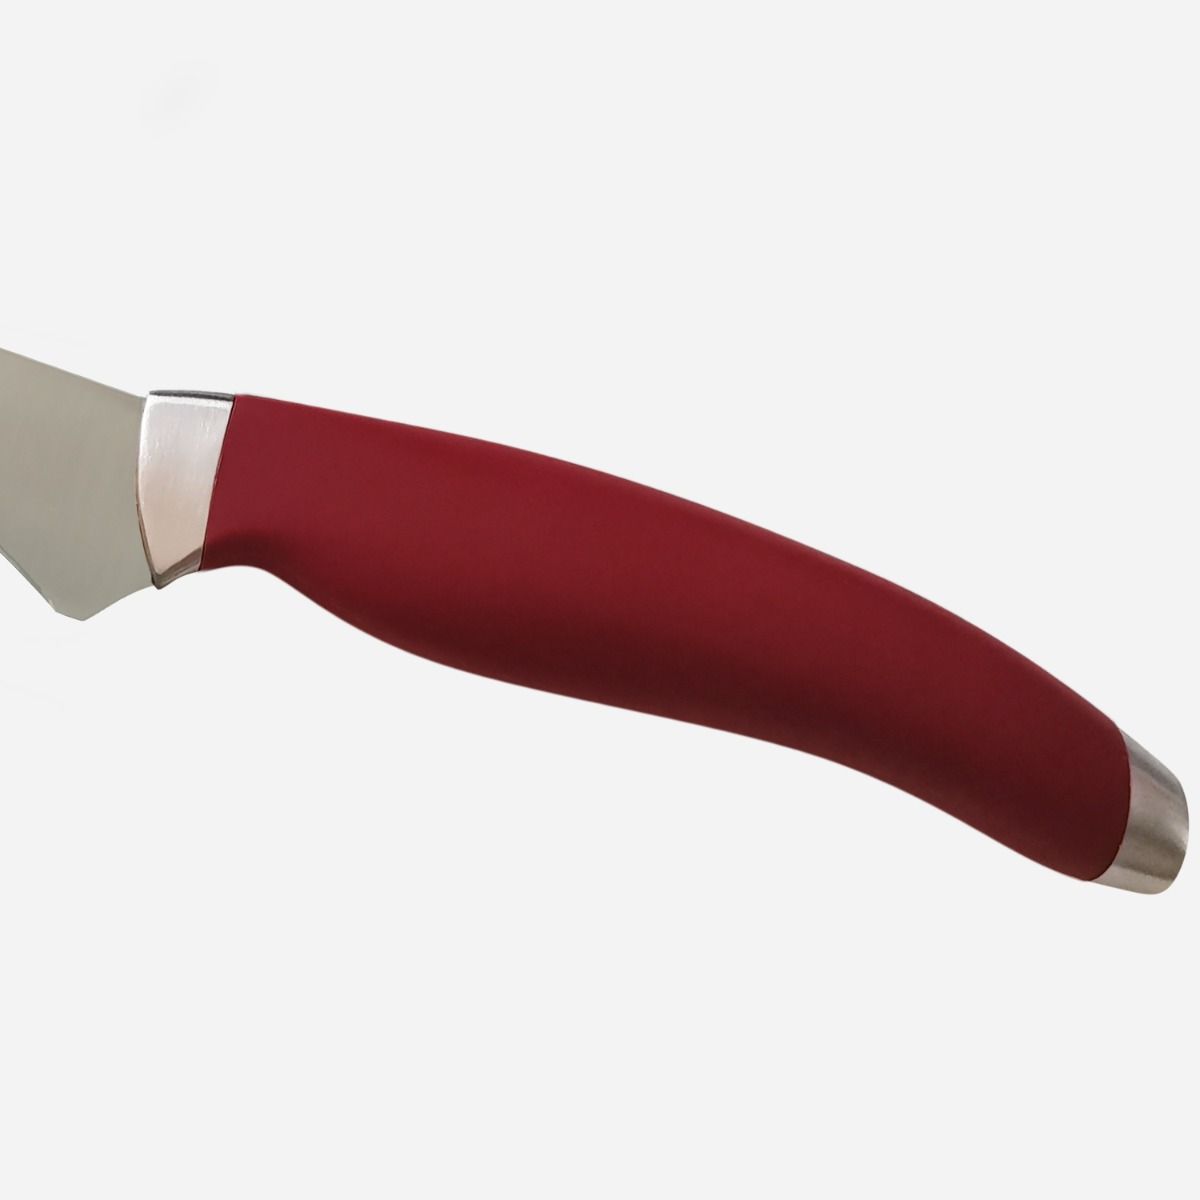 Fillet Knife 19 cm  Stainless Steel Berkel Teknica Handle Red Resin